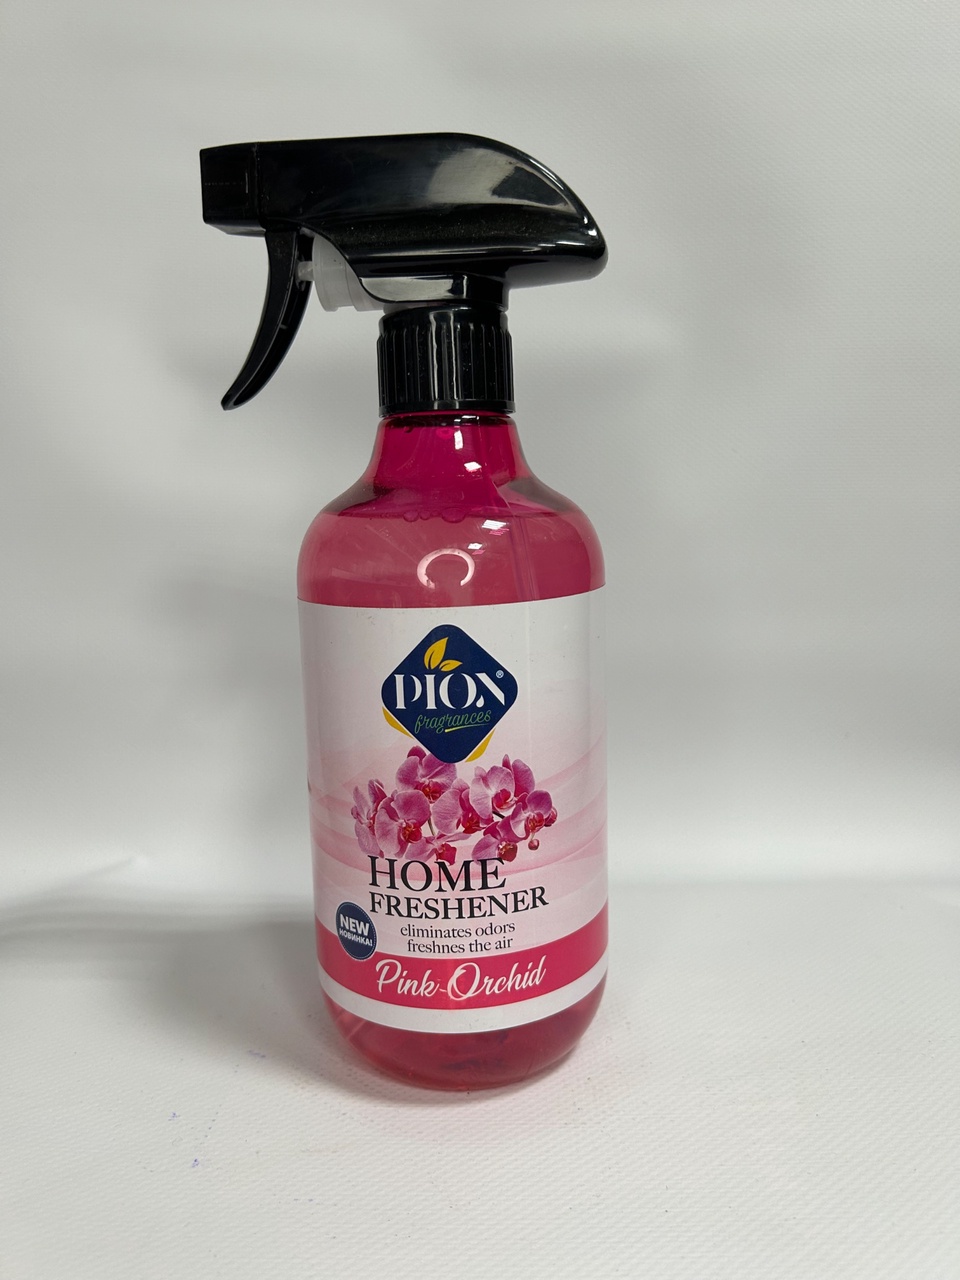 Спрей освежитель Diox с ароматом «Розовая орхидея» - 250 ₽, заказать онлайн.